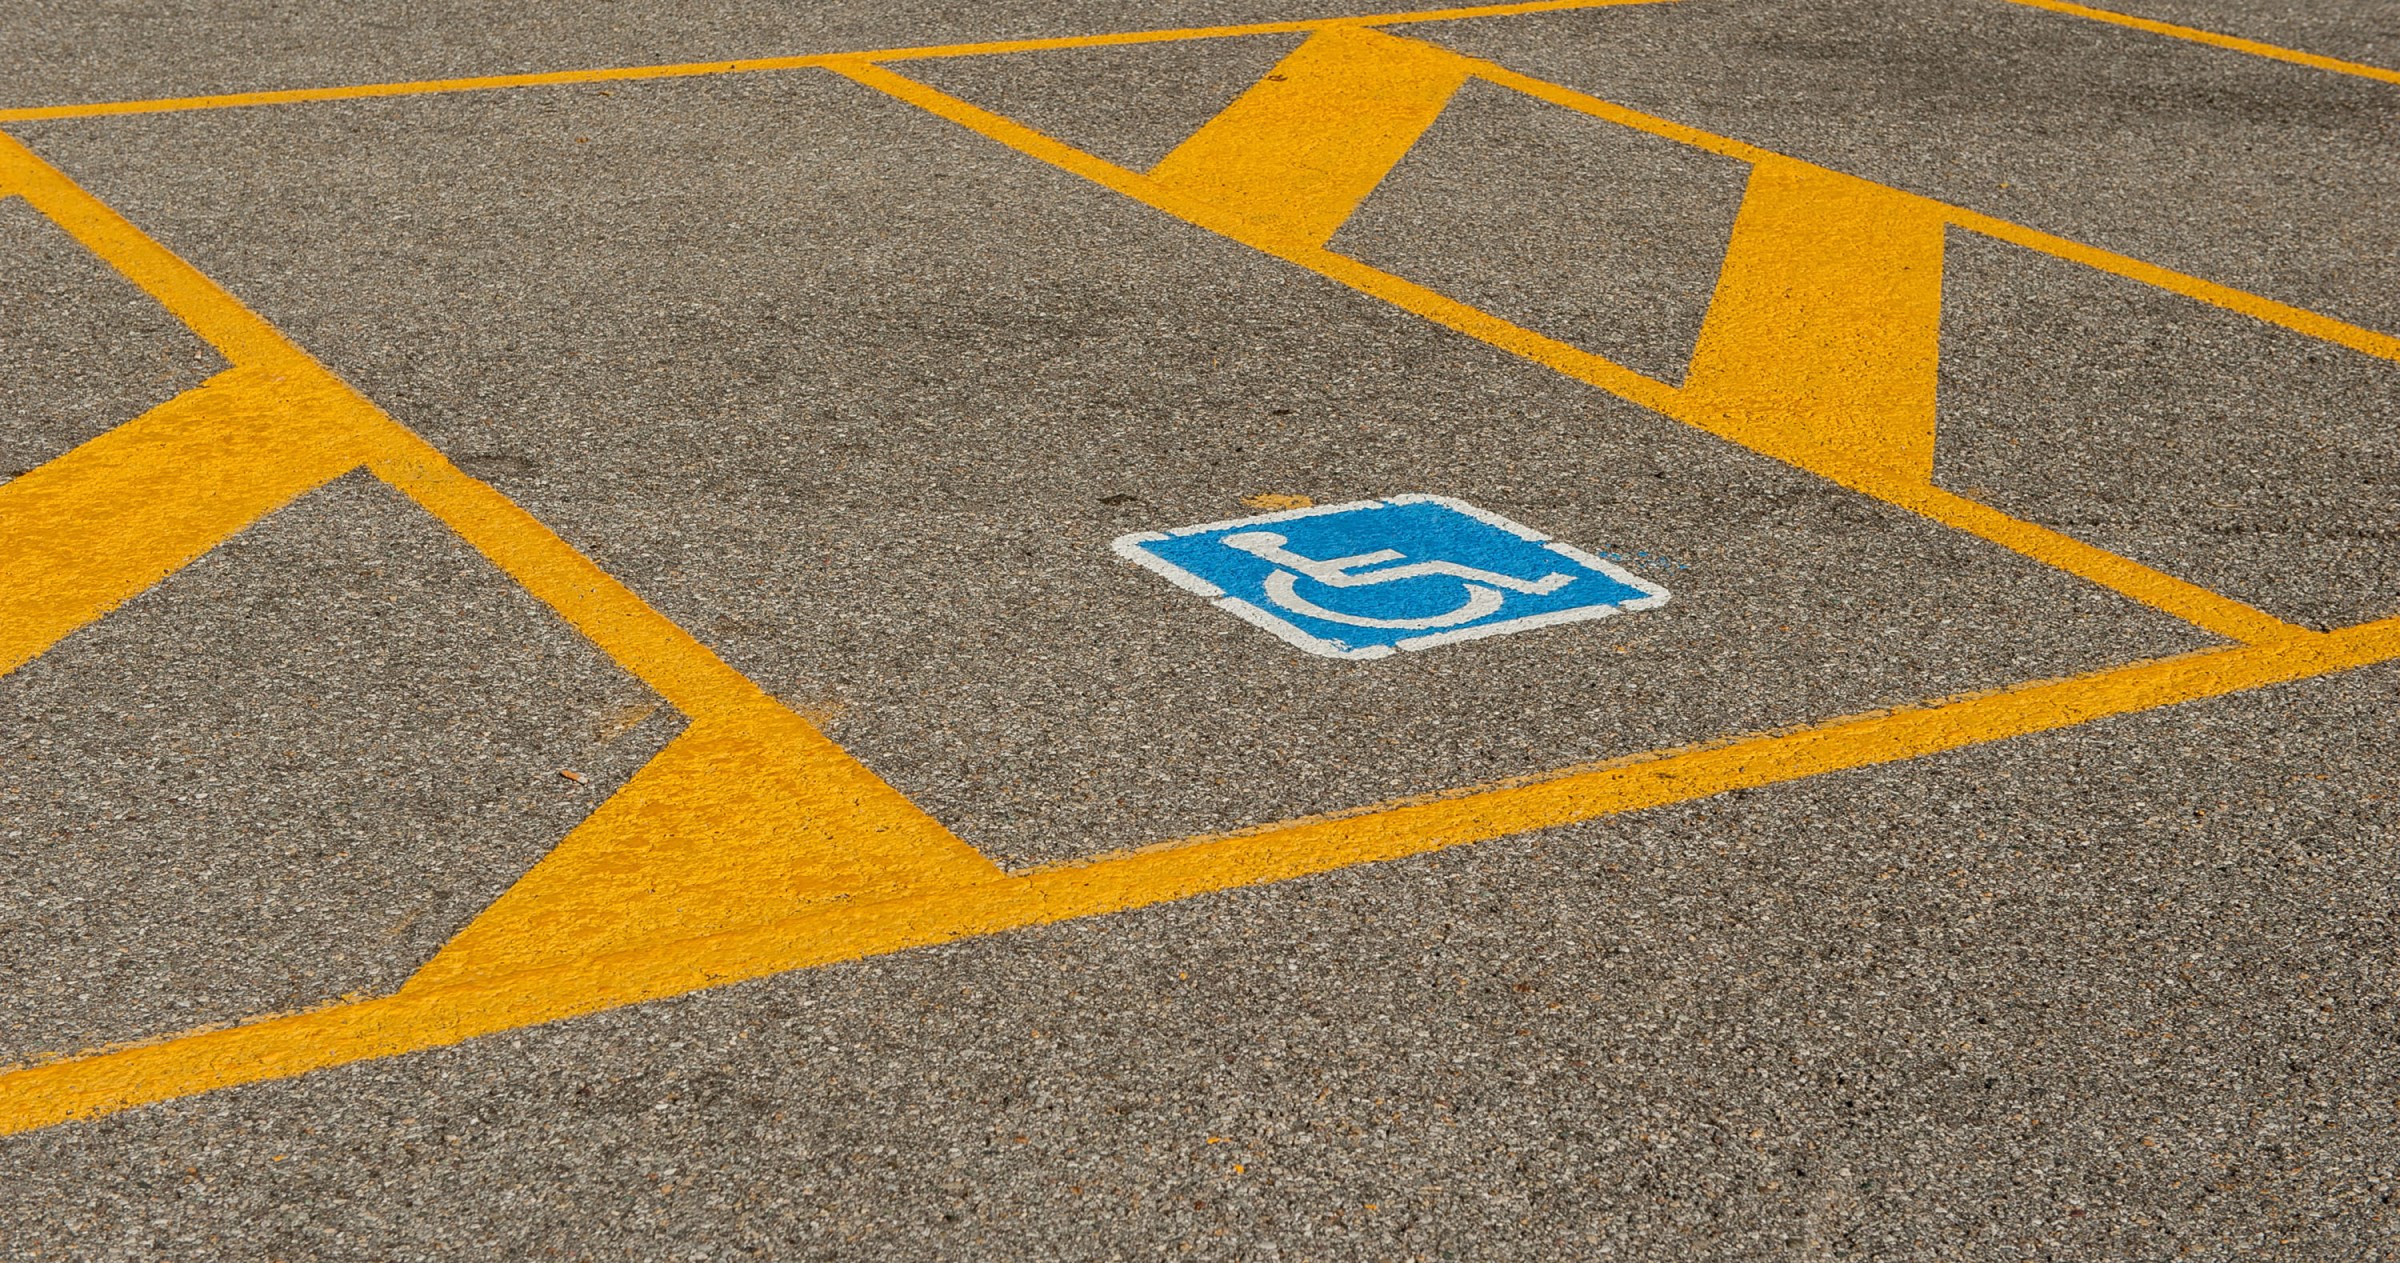 Image of a blue handicap parking space